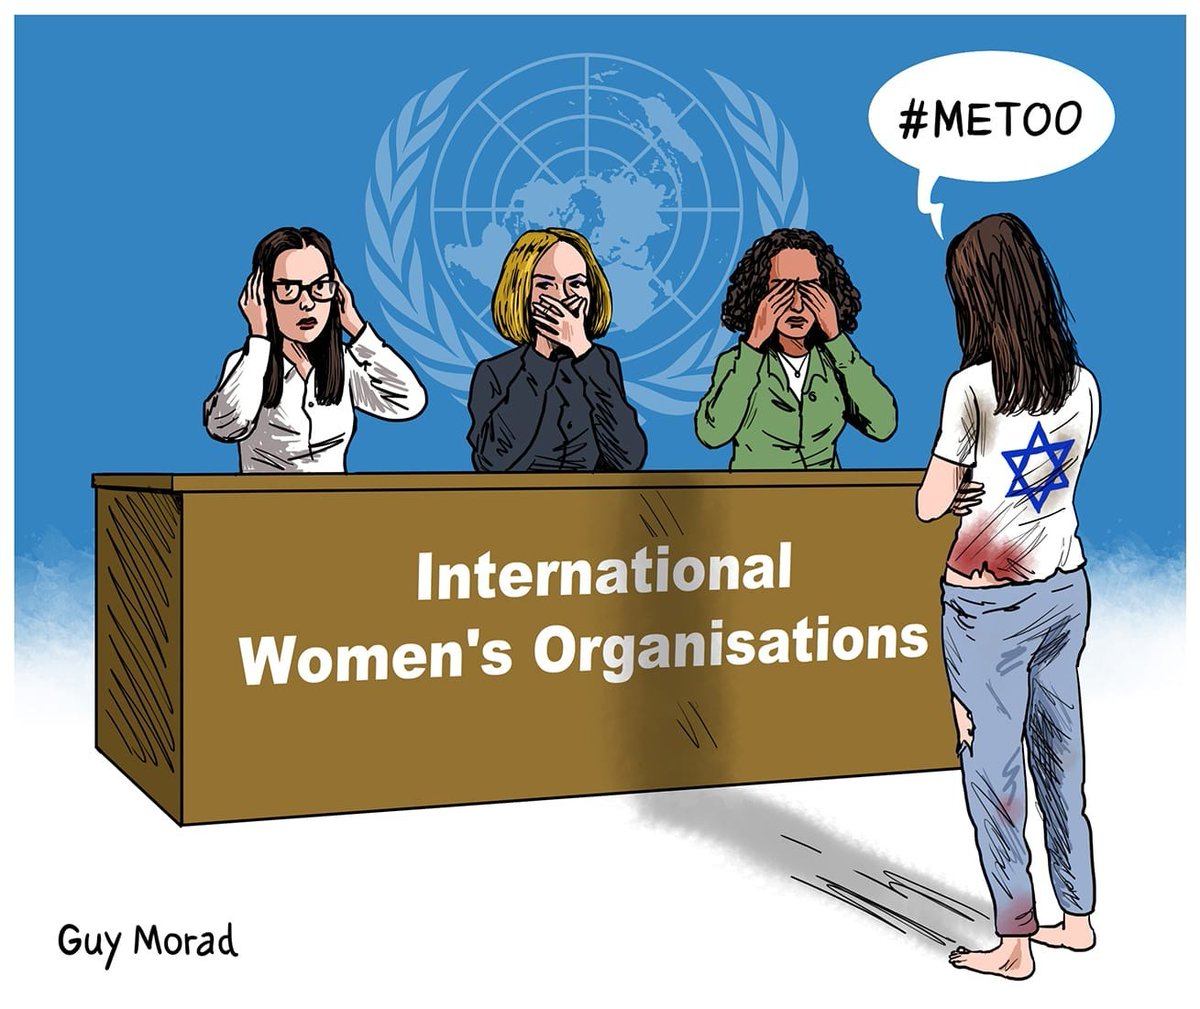 הצביעות והשתיקה של עמותת MeToo על התעללות בנשים ישראליות על ידי מחבלי החמאס